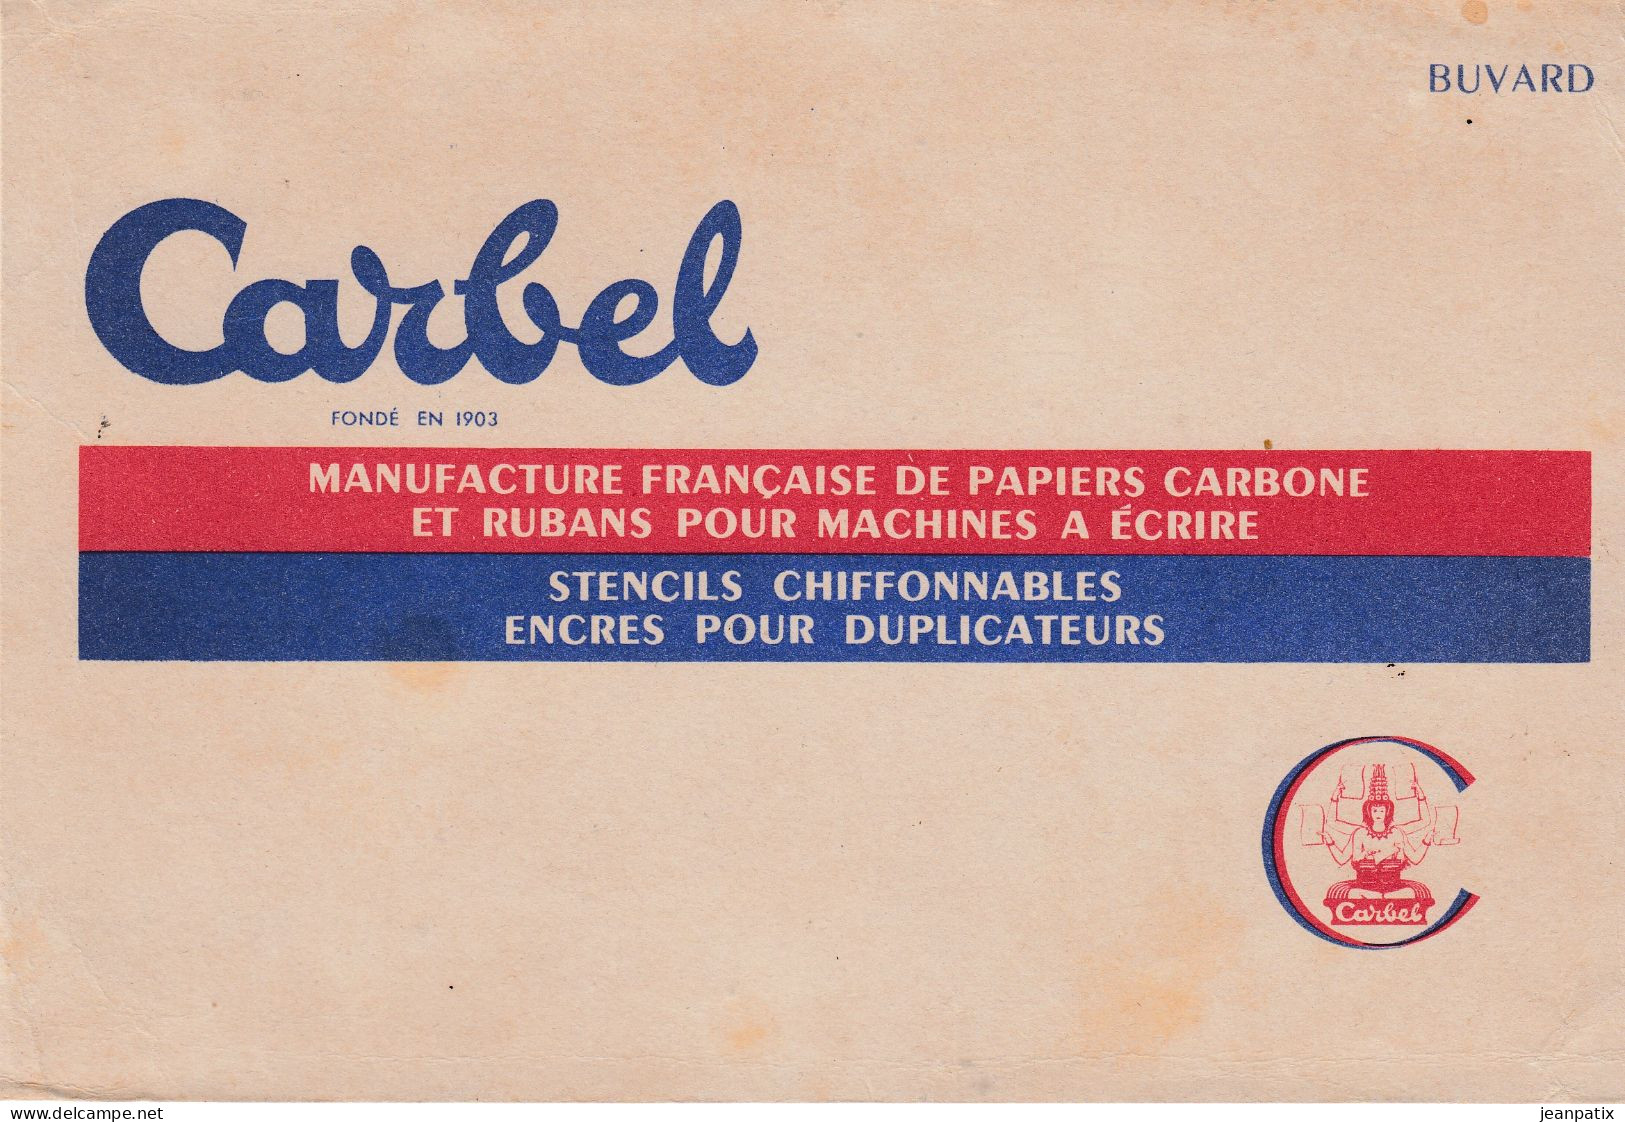 BUVARD & BLOTTER - CARBEL - Manufacture De Papier Carbone Our Machine à écrire - Cocoa & Chocolat